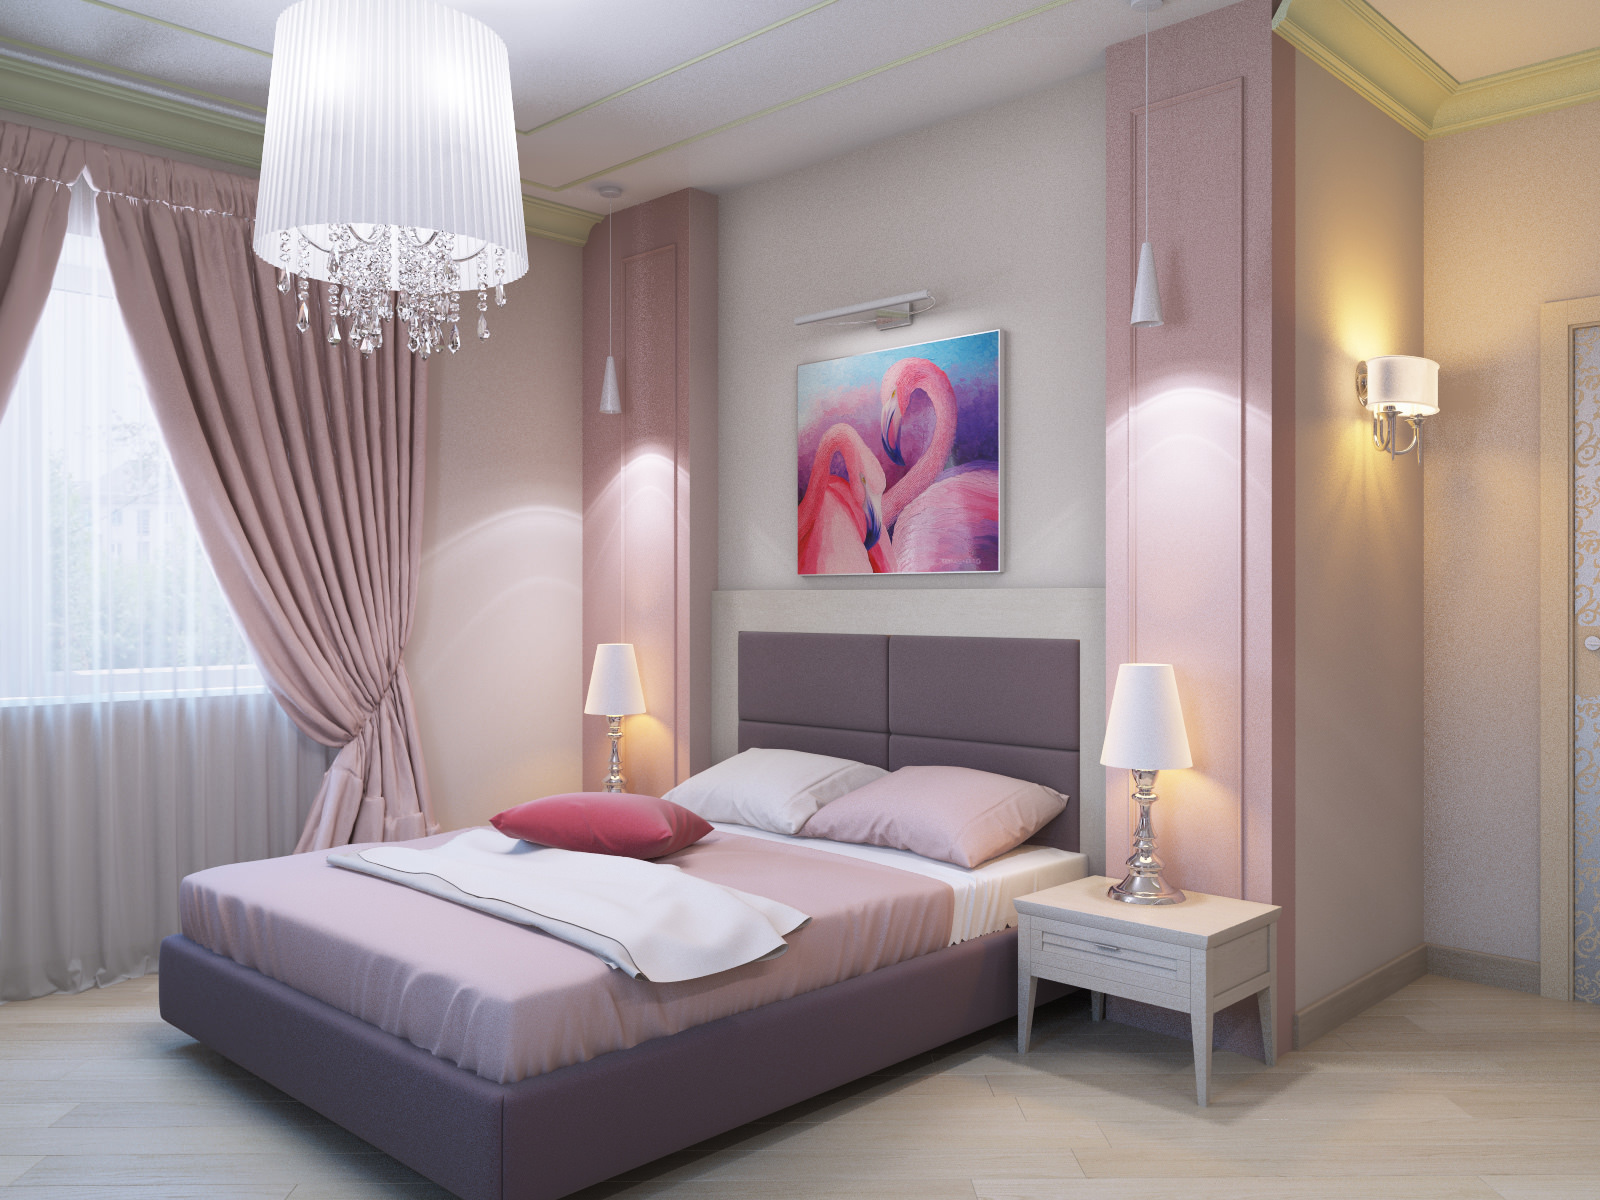 Κουρτίνες και τούλι στο υπνοδωμάτιο σε ροζ χρώματα